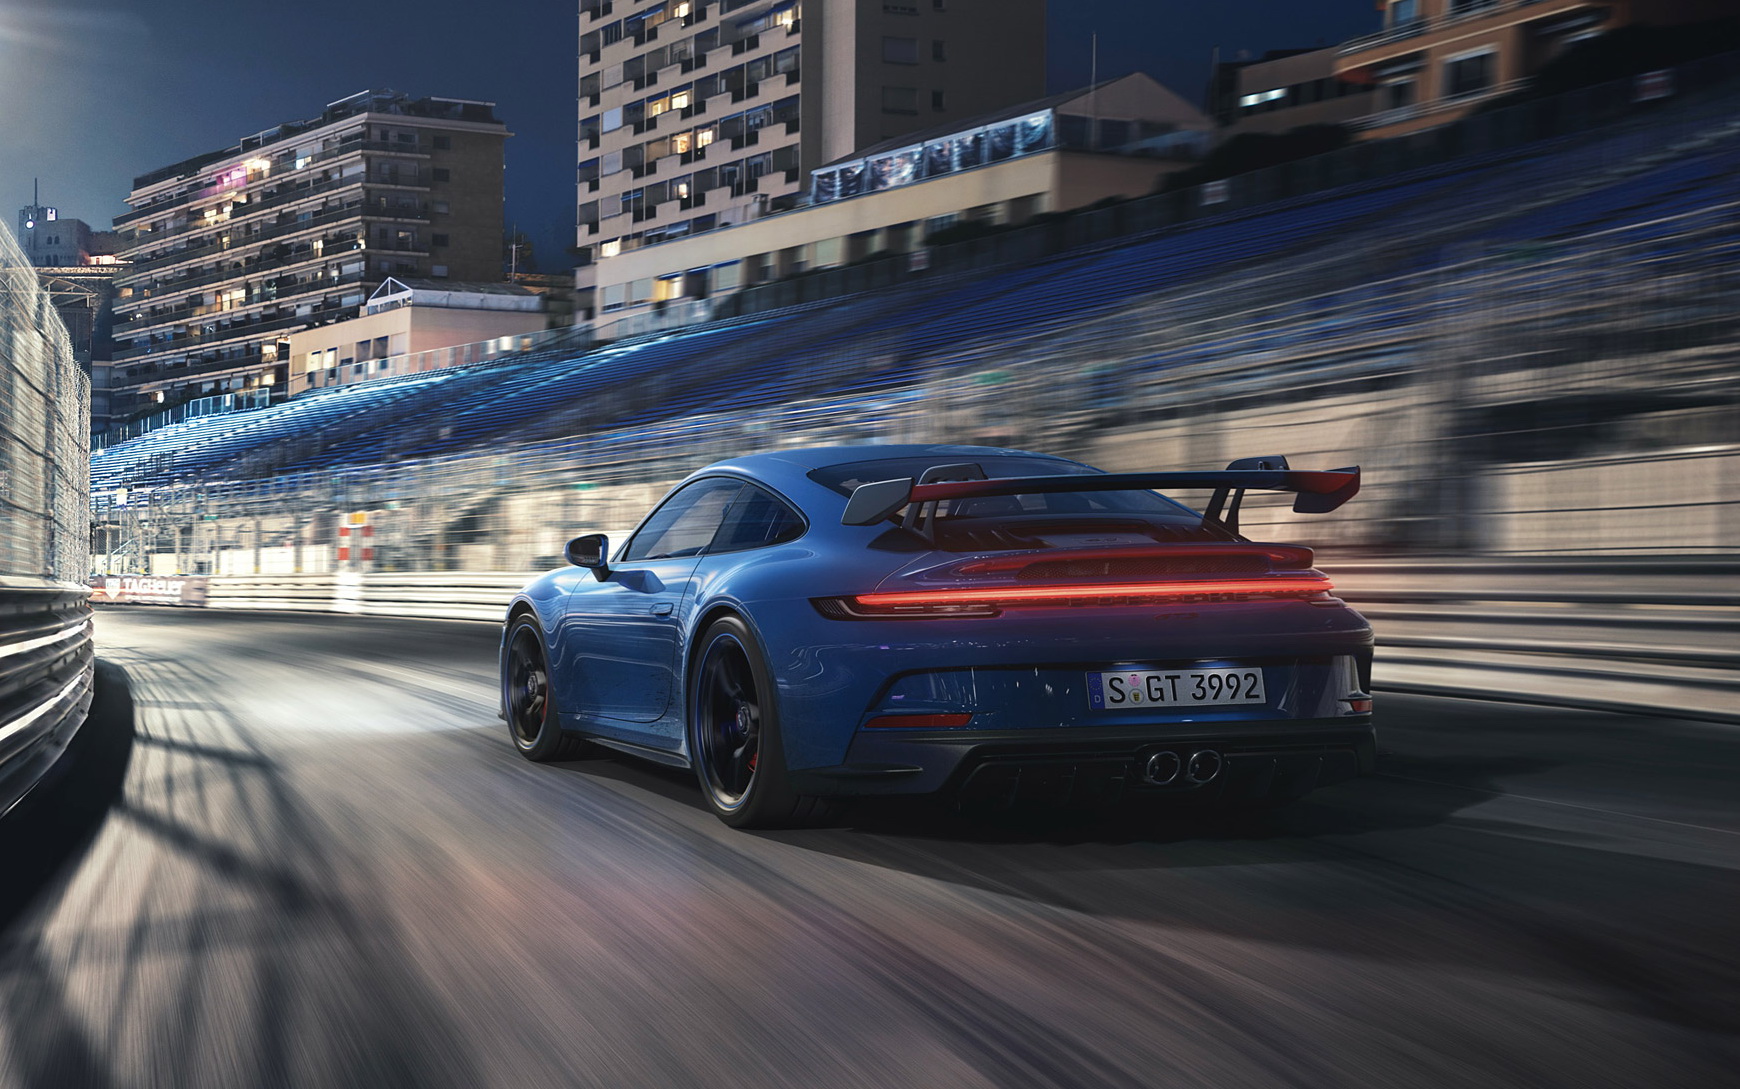 Porsche 911 GT3 กบฮาร์ดคอร์ตัวใหม่ วิ่งพริ้วรอบ Nuerburgring เร็วกว่าตัวก่อน 17 วินาที